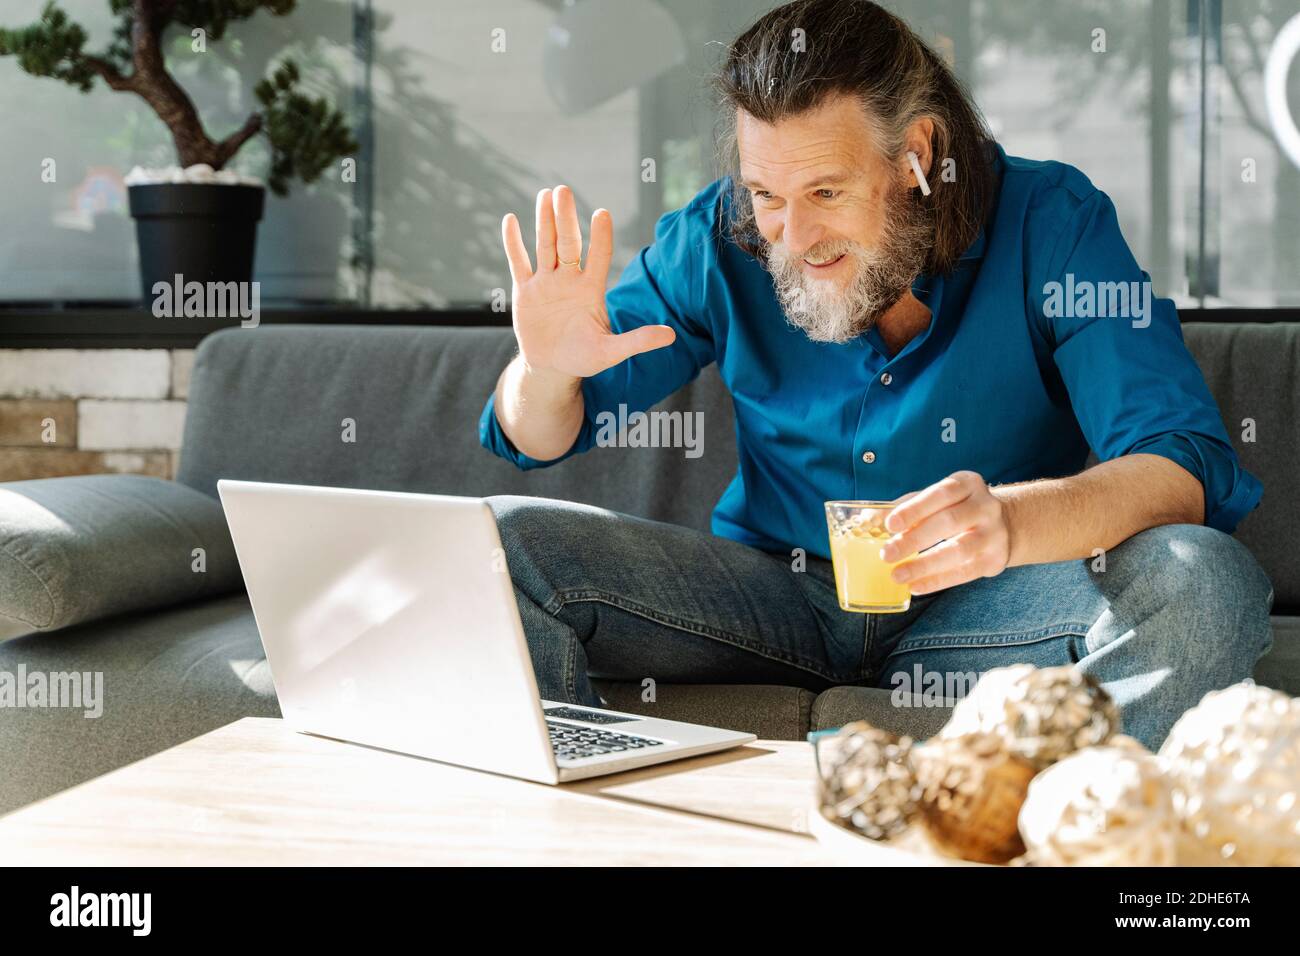 Homme mûr avec une barbe qui boit du jus d'orange et regarde à son lapto  Photo Stock - Alamy